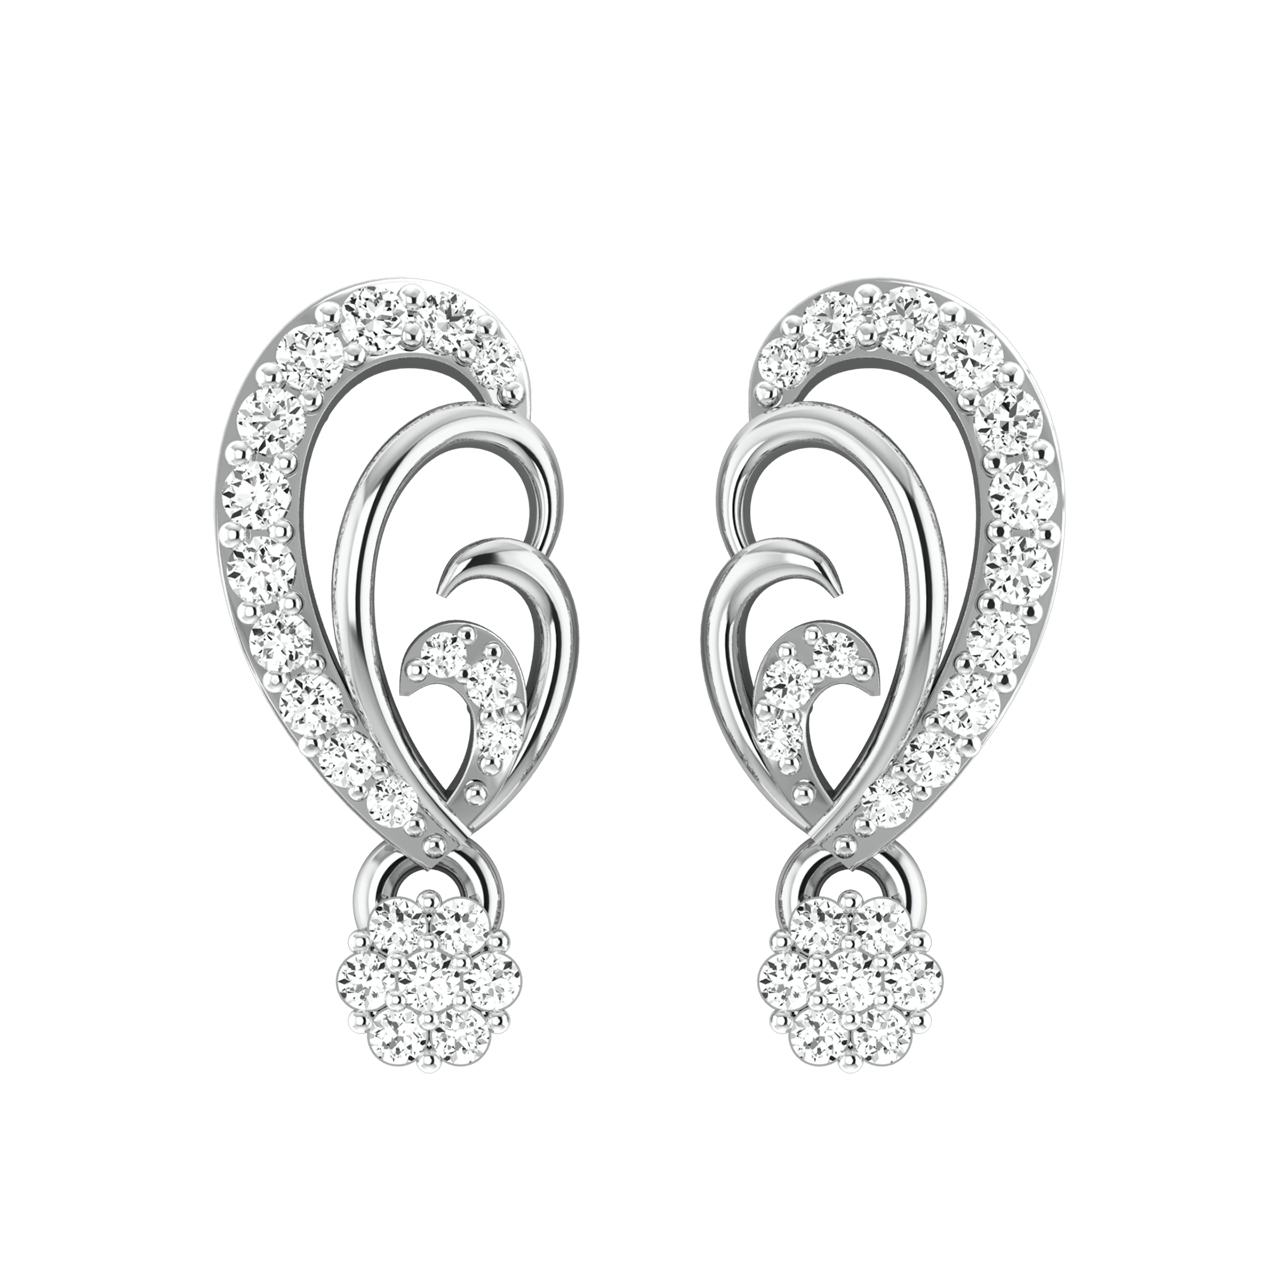 Wren Diamond Stud Earrings For Her